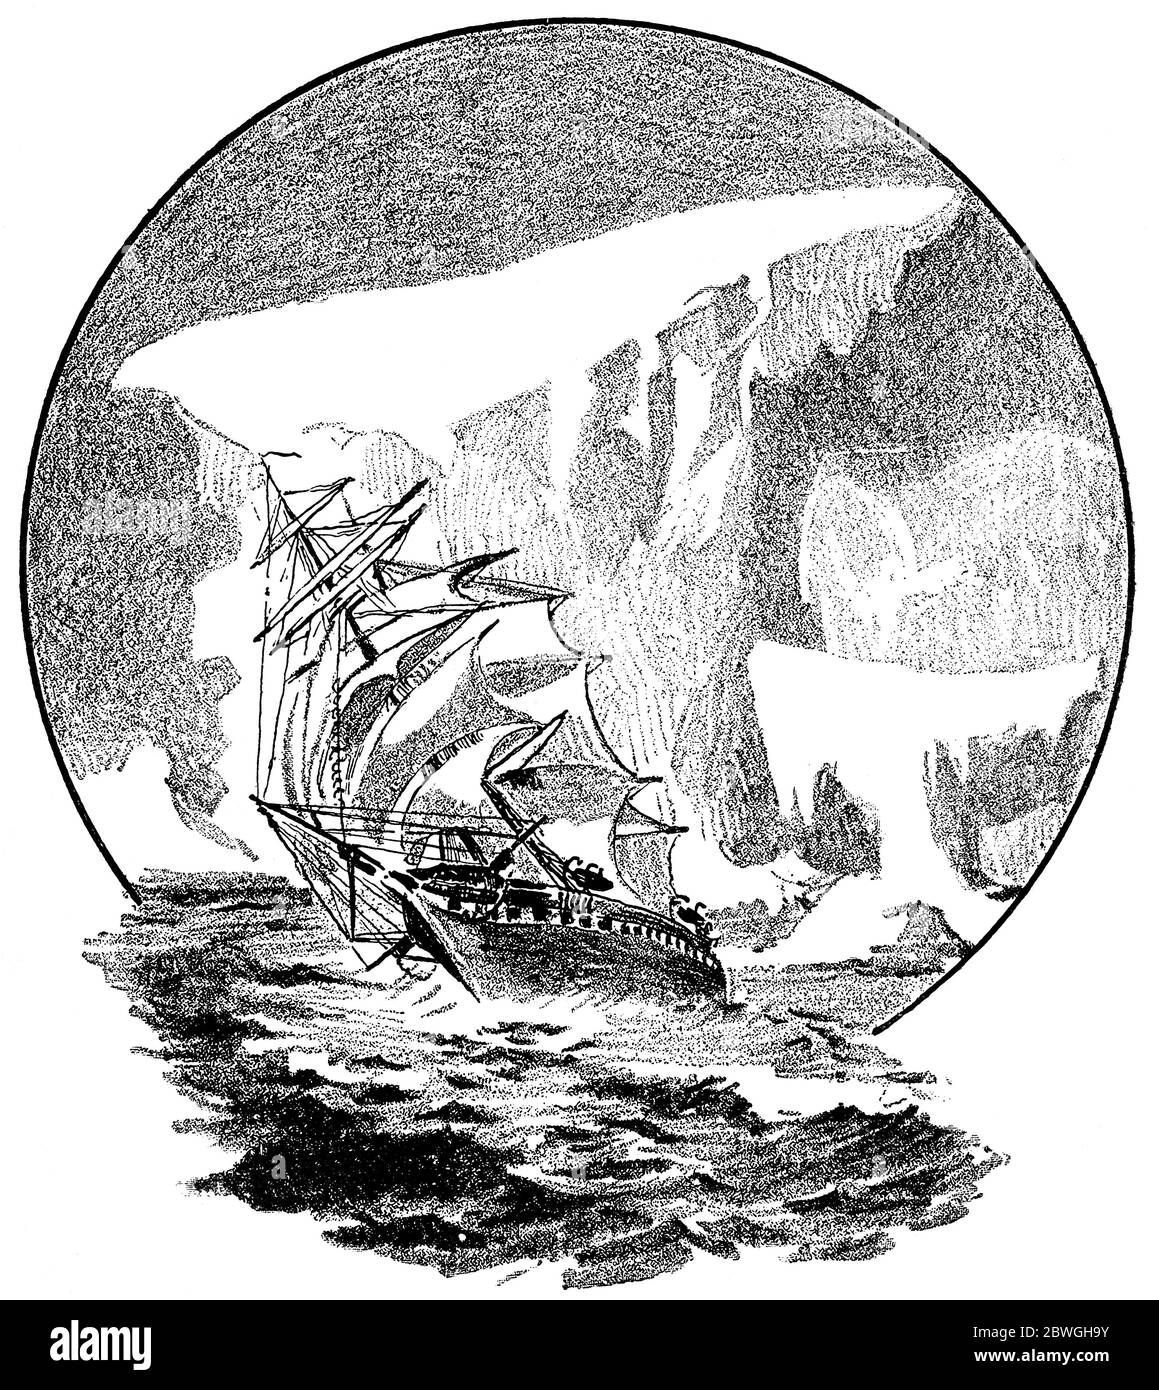 Navire et iceberg. Illustration du XIXe siècle. Fond blanc. Banque D'Images